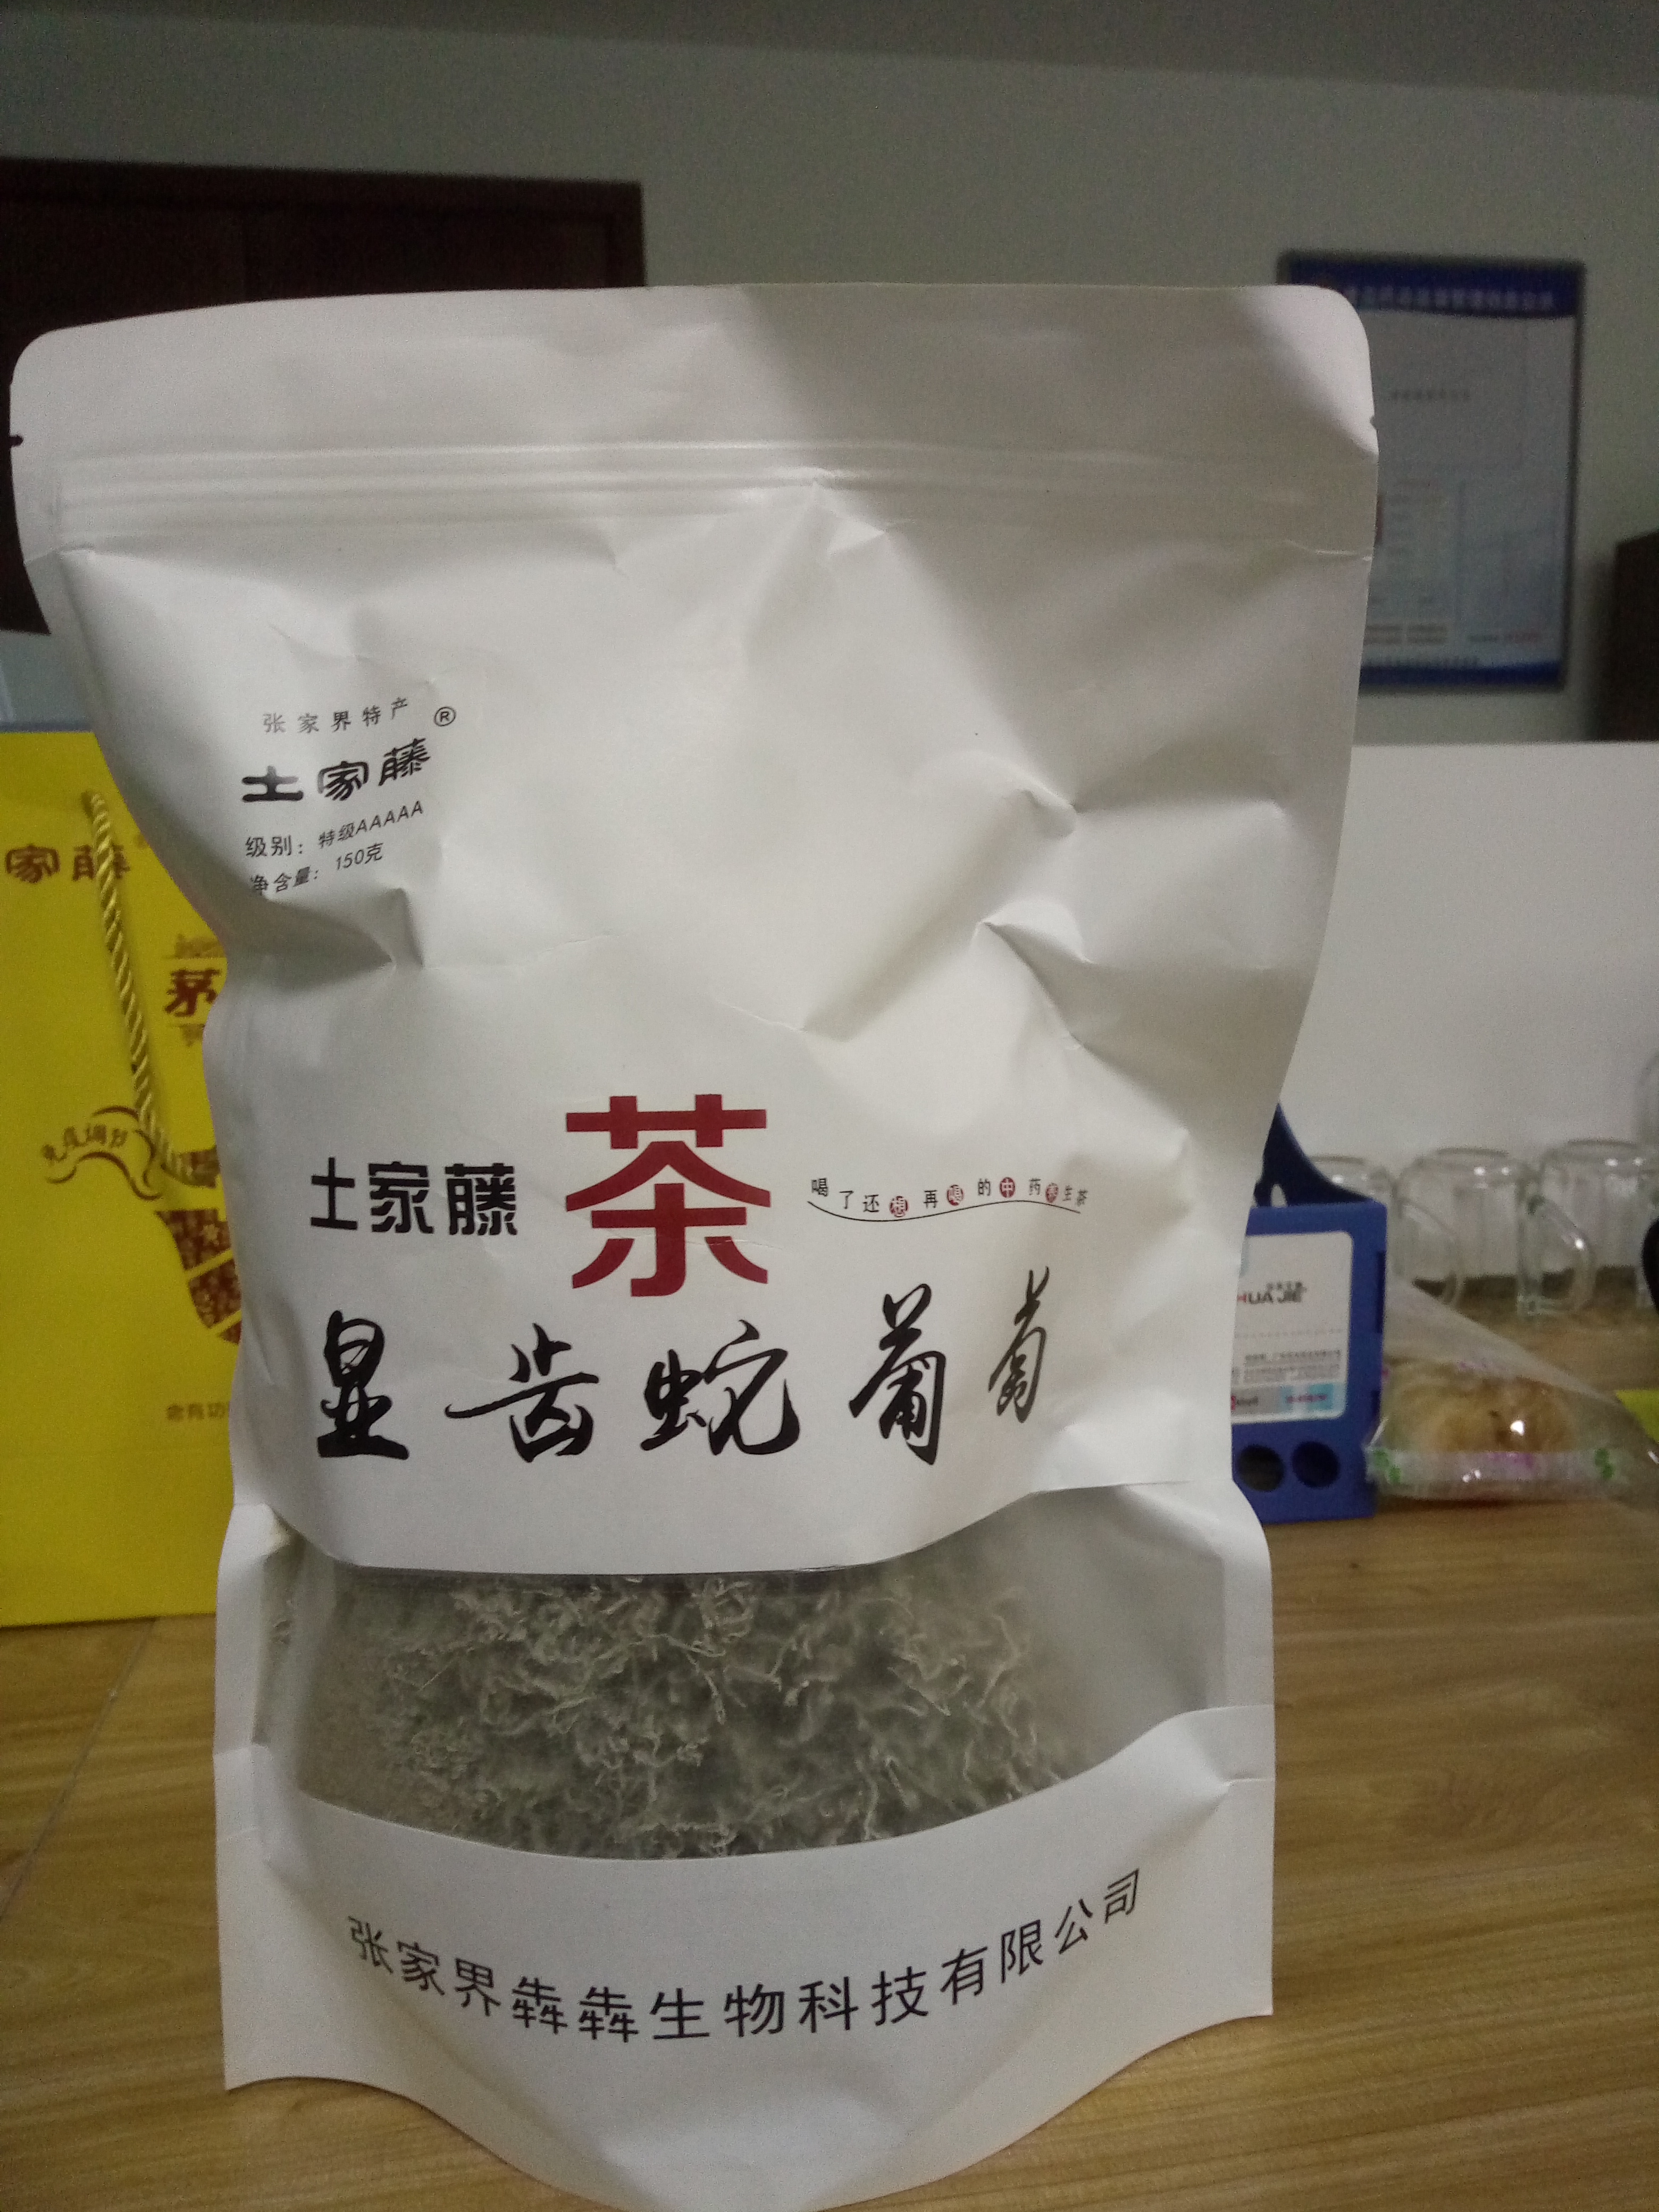 深圳市茅岩莓茶藤茶厂家茅岩莓茶龙须茶神仙茶长寿茶 茅岩莓茶藤茶